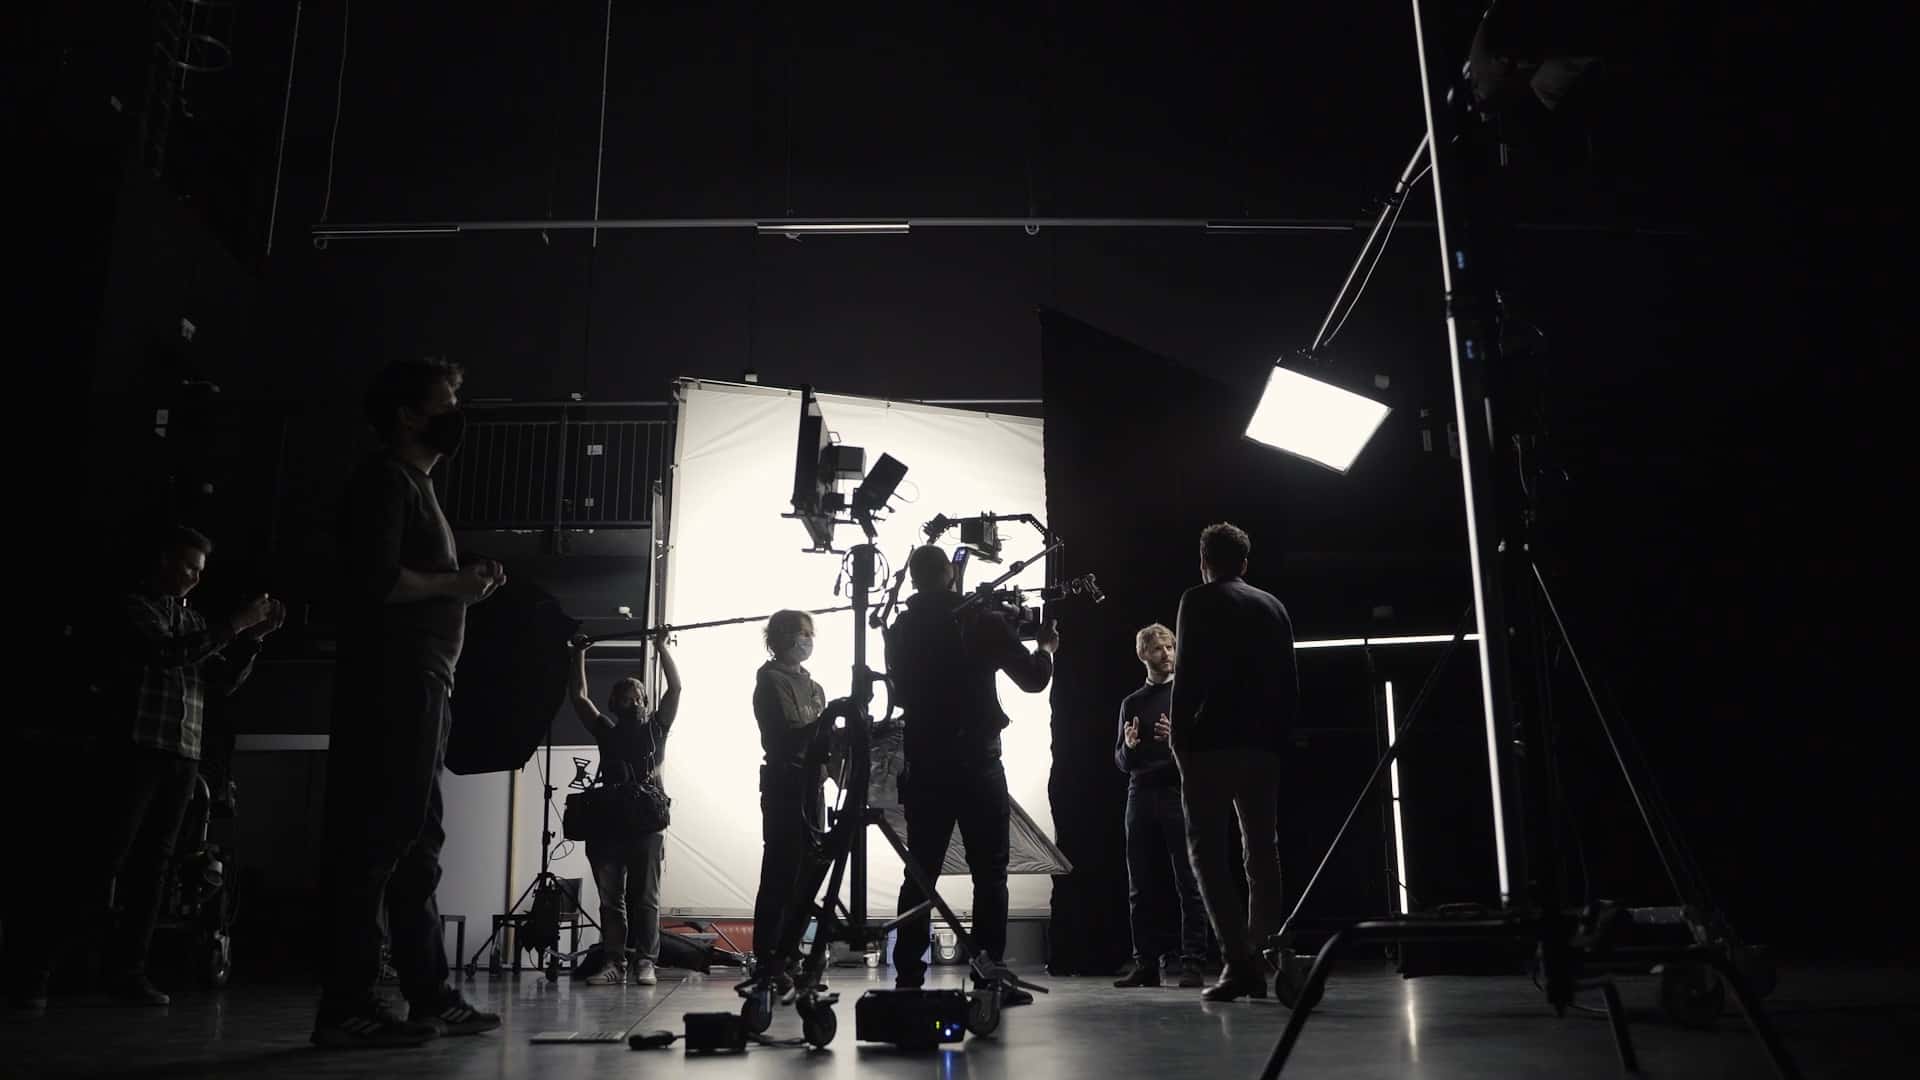 Hawkins Filmproduktion aus Stuttgart behind the scenes beim Dreh der Produktpräsentation von Sono Motors.